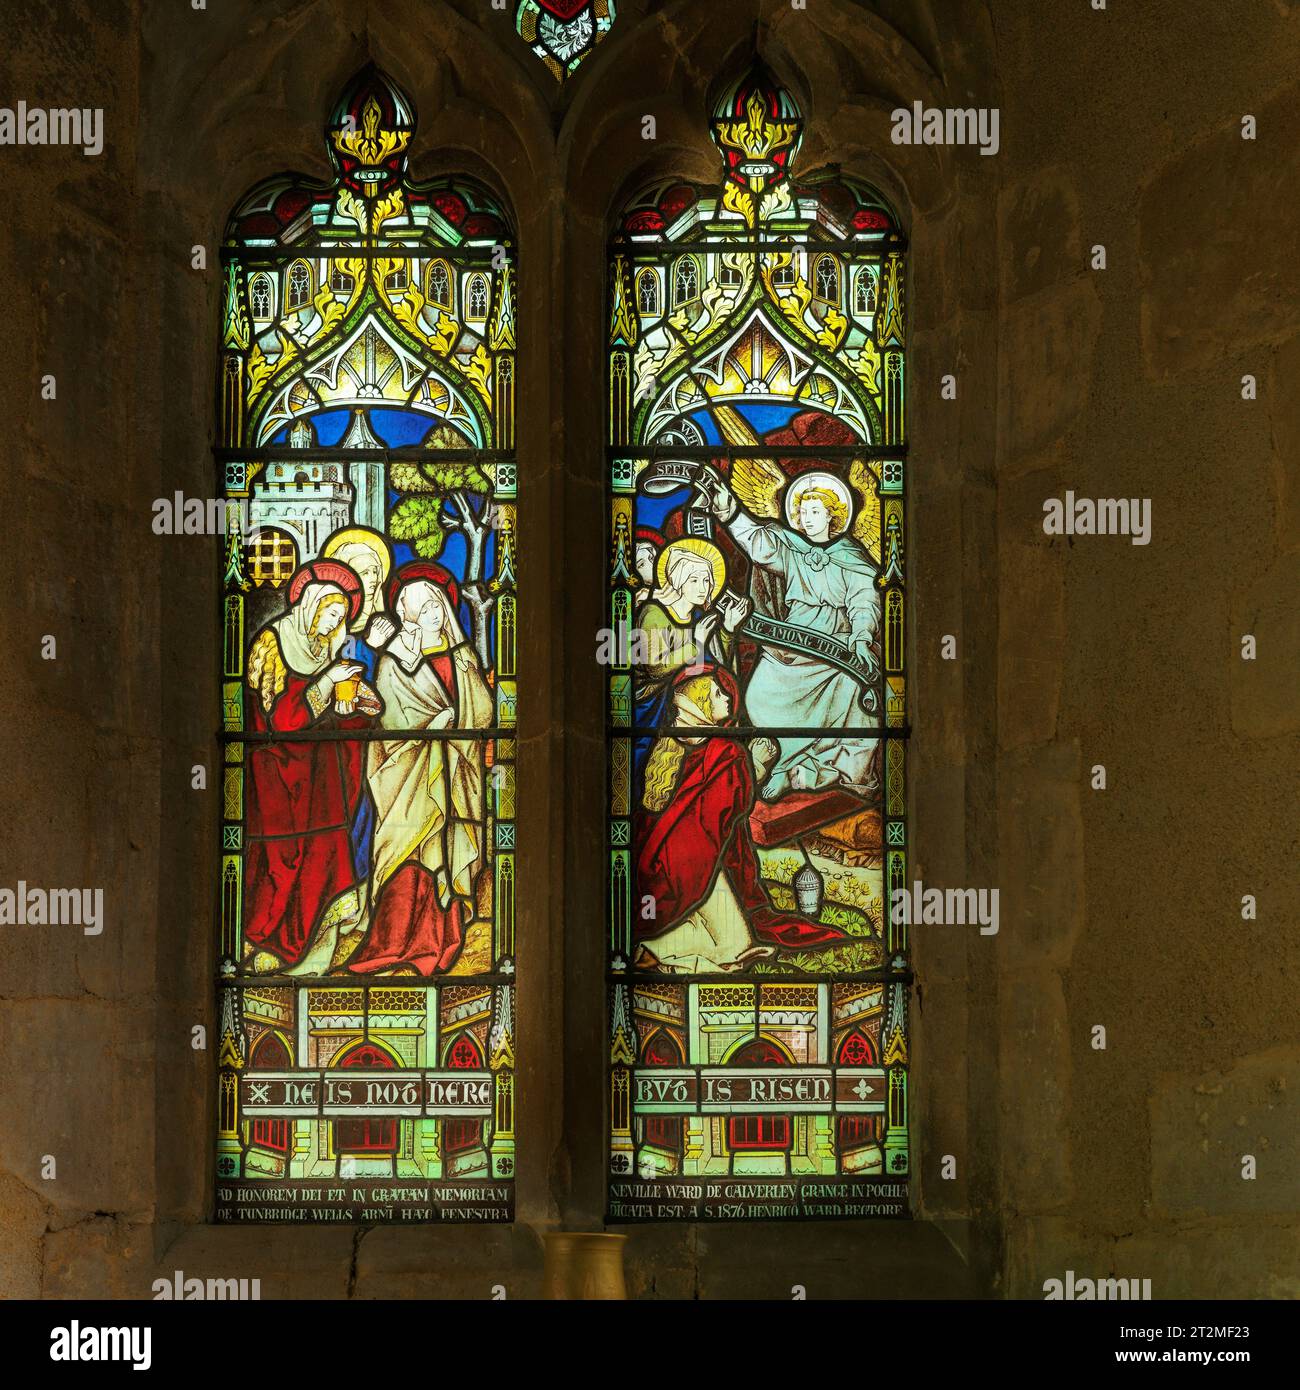 Una vetrata nella chiesa cristiana di San Pietro del XII secolo, nel villaggio inglese di Aldwinkle, N'hants. Foto Stock